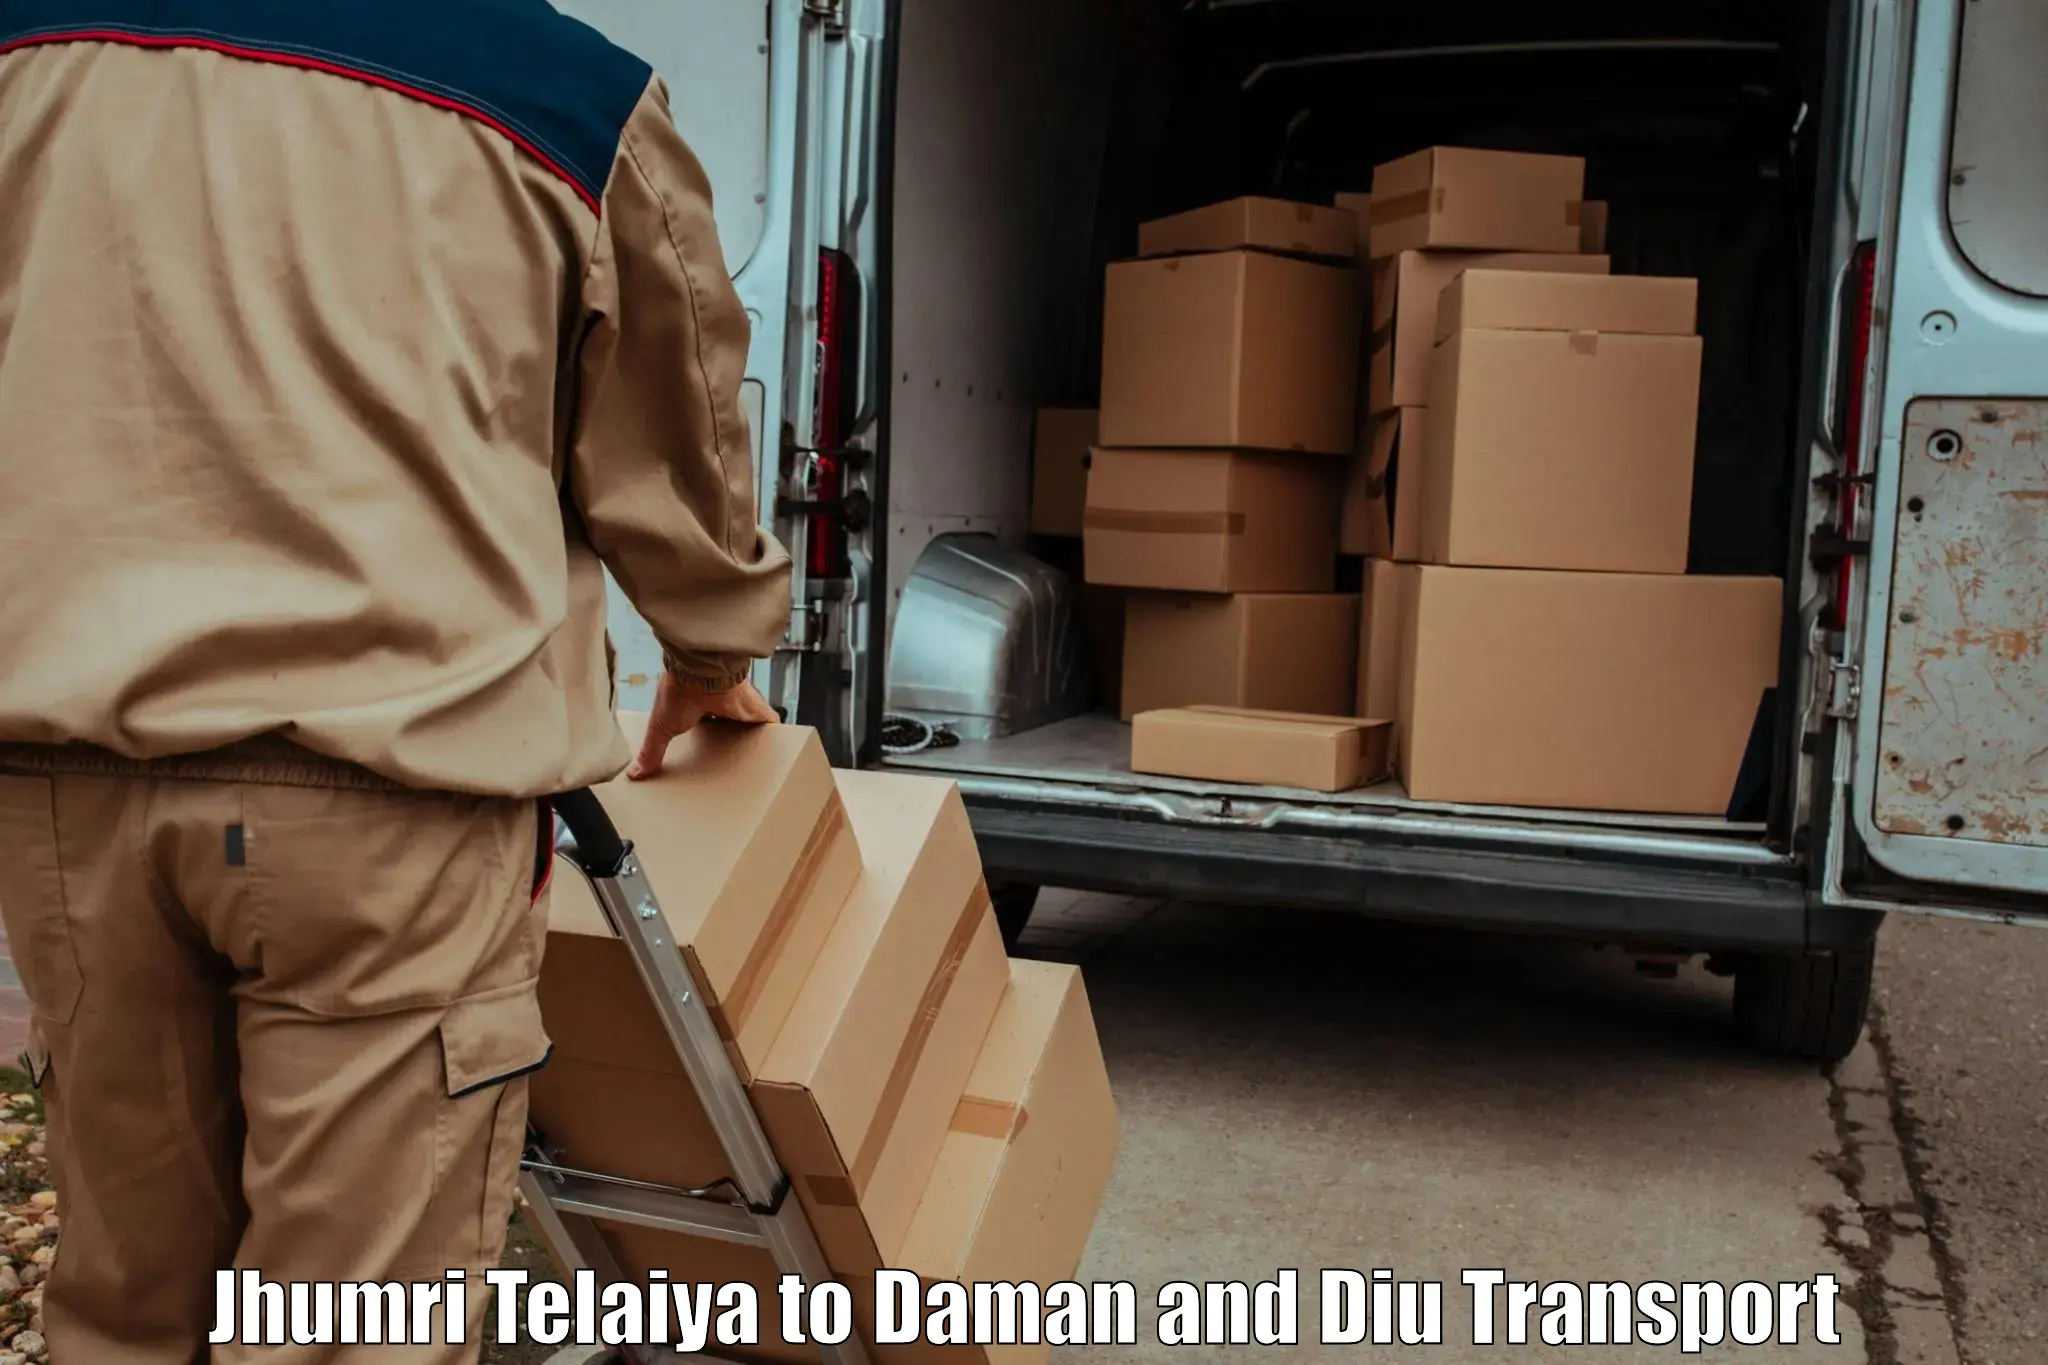 Land transport services in Jhumri Telaiya to Daman